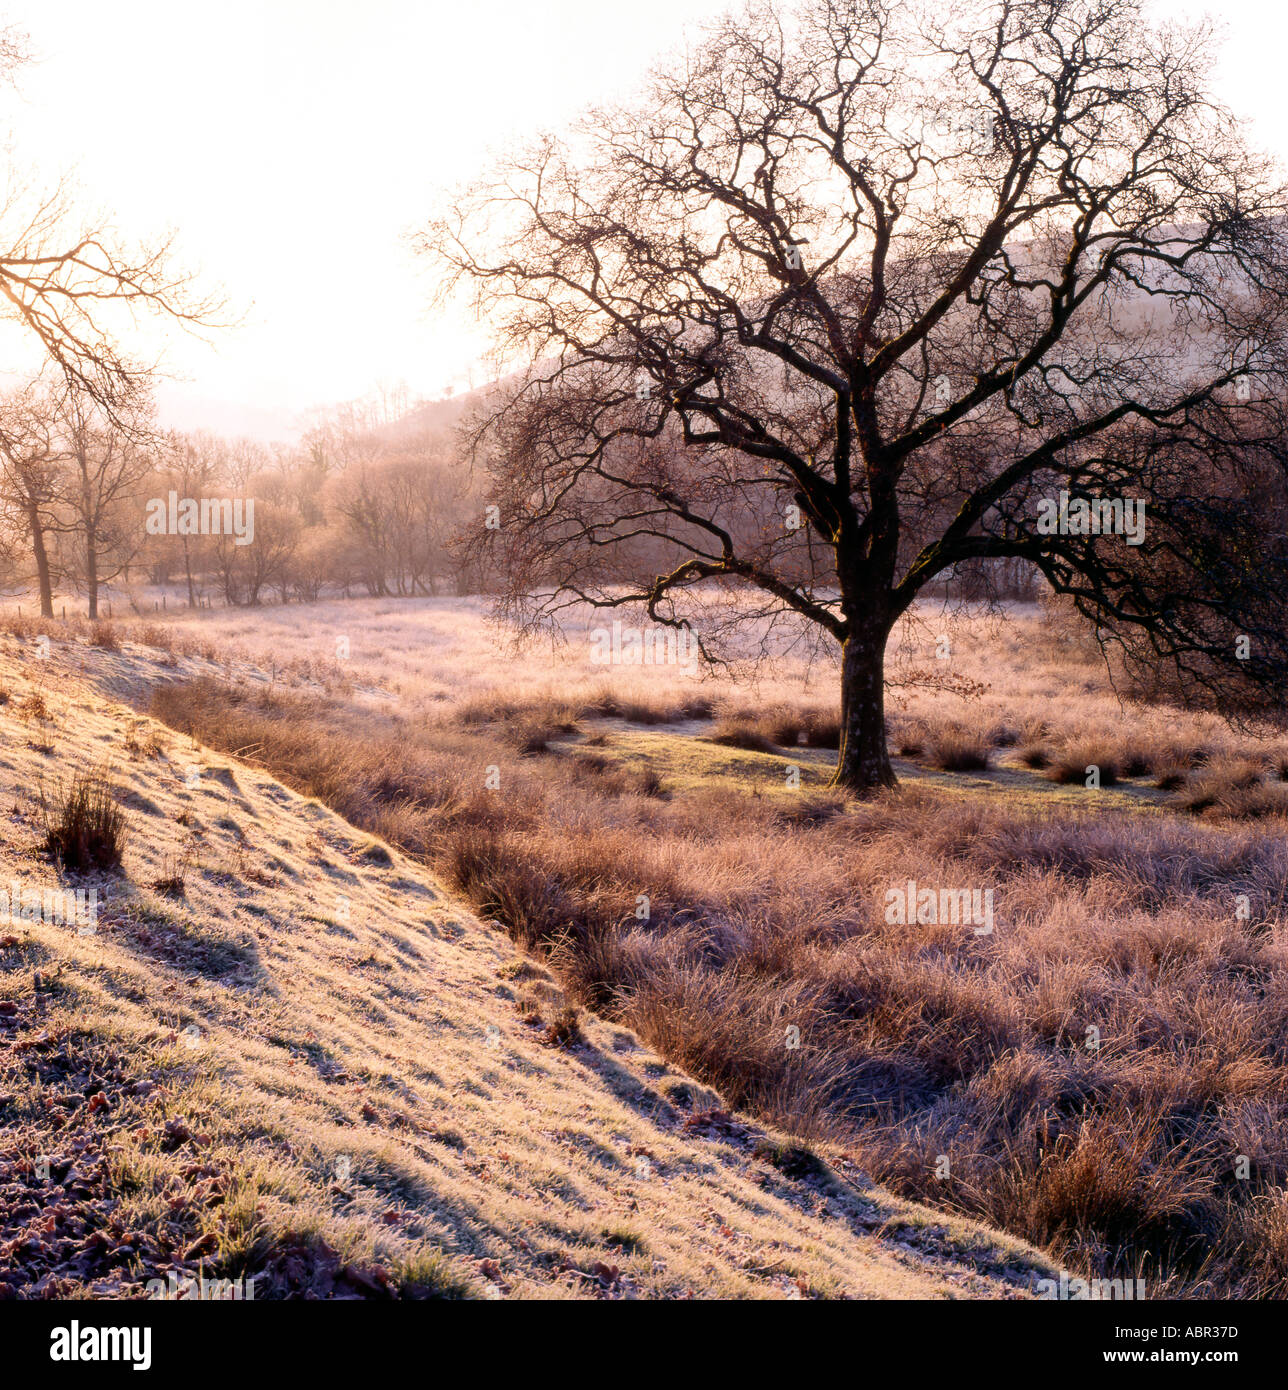 Eine alte Eiche an einem späten Winternachmittag Walisische Landschaft Carmarthenshire Wales Großbritannien KATHY DEWITT Stockfoto